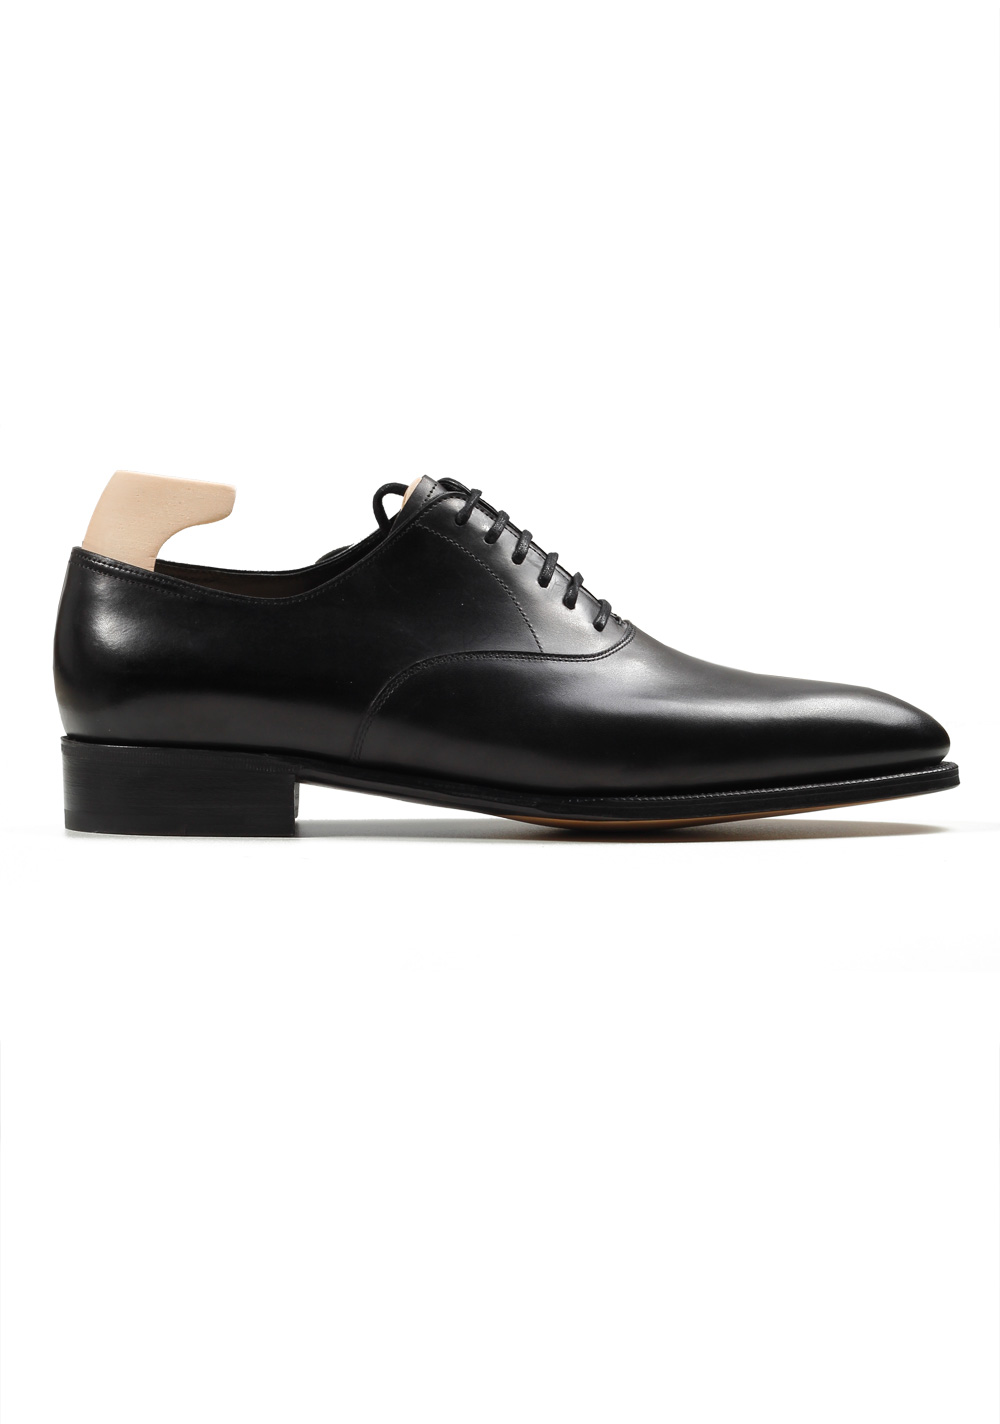 John Lobb Seaton Black Oxford Shoes Size 9,5 UK / 10,5 U.S. On 7000 Last | Costume Limité